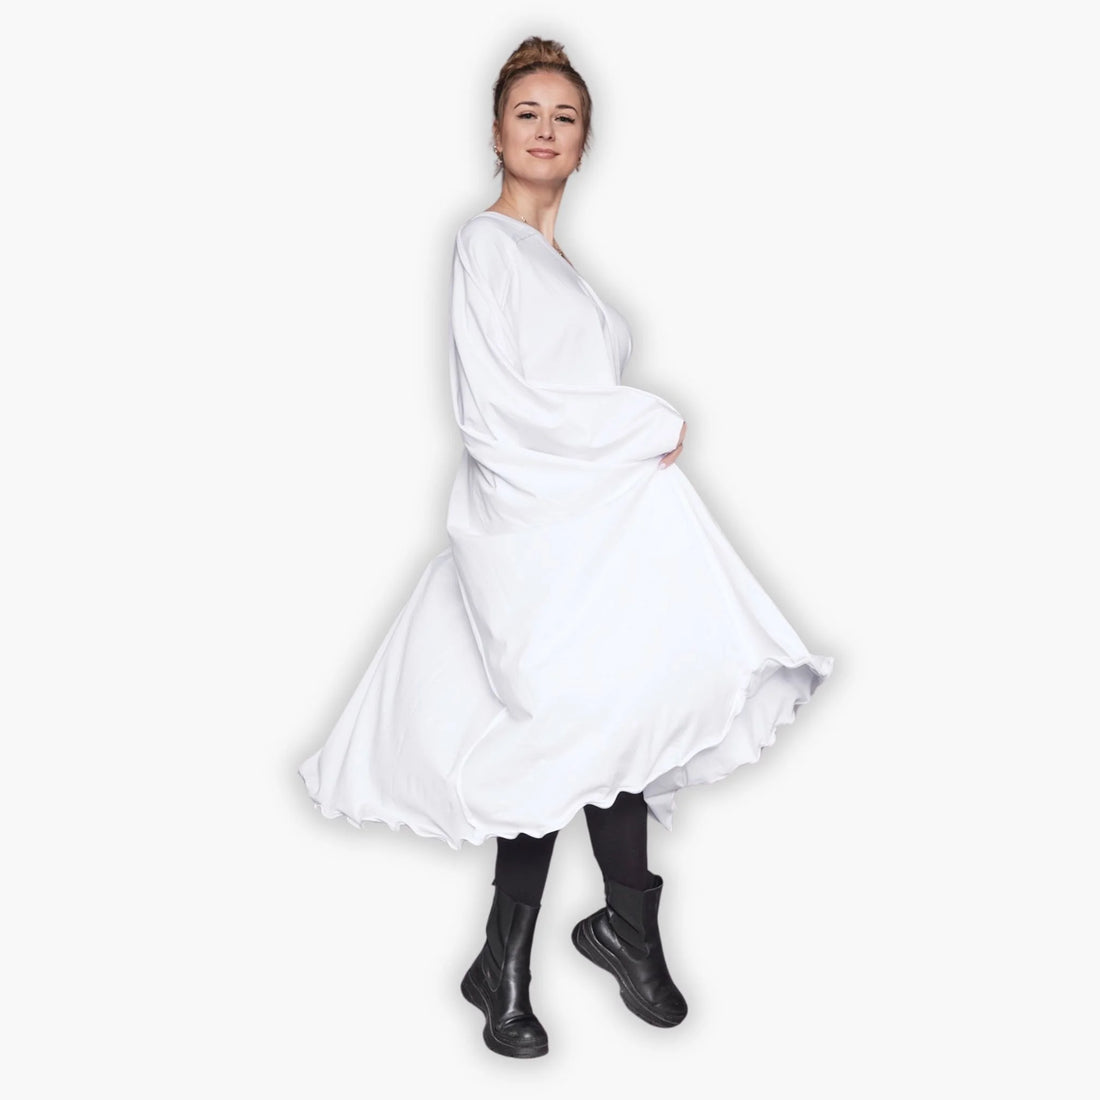 Kleid von Loud N Proud aus Baumwolle in gerundeter Form, LNP900, Weiß, Unifarben, Schick